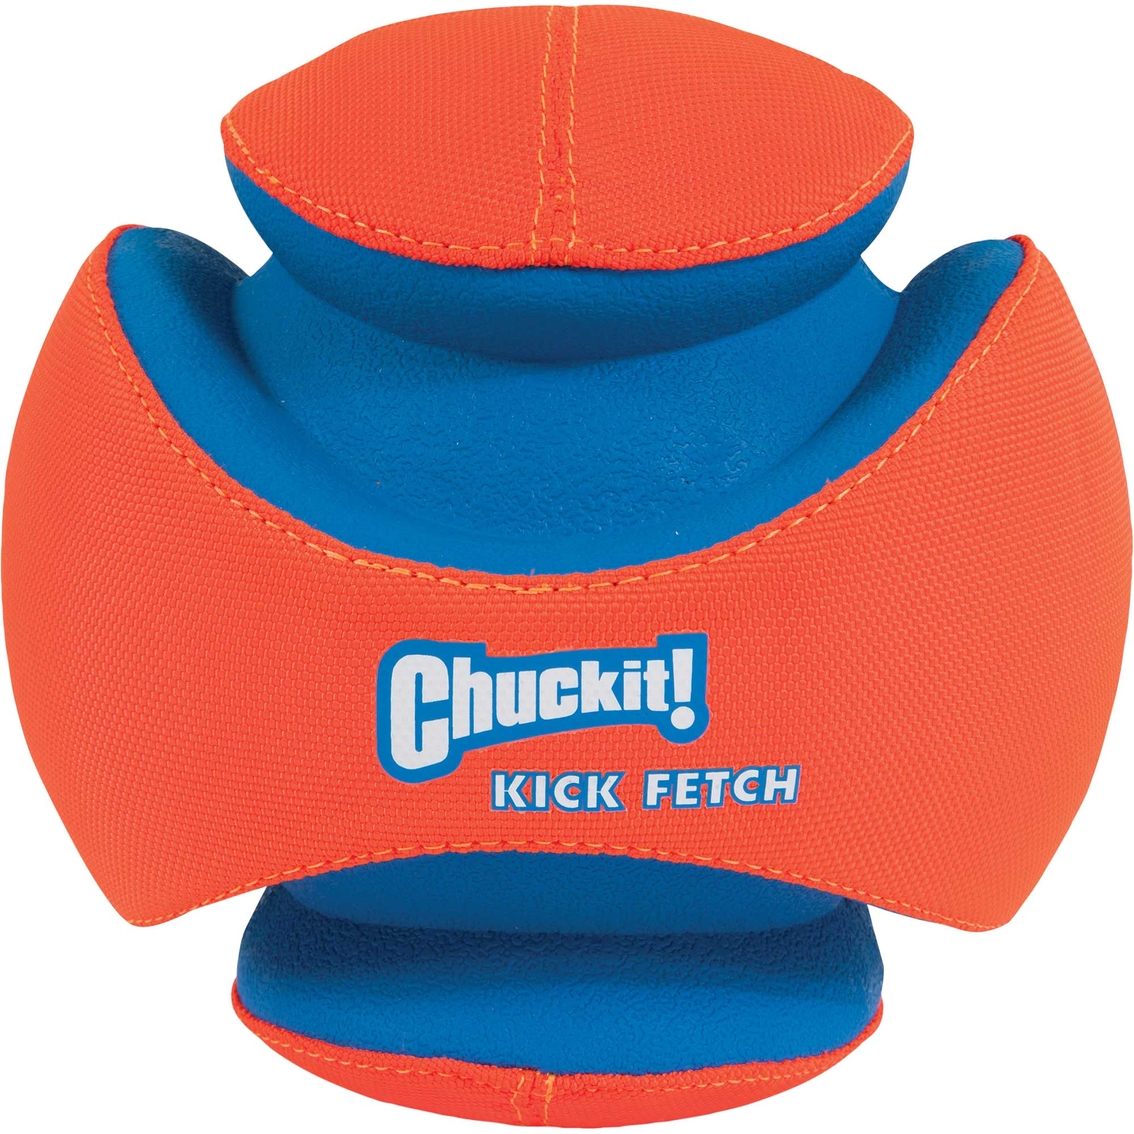 Petmate Chuckit! Large Kick Fetch Dog Ball - Image 3 of 3